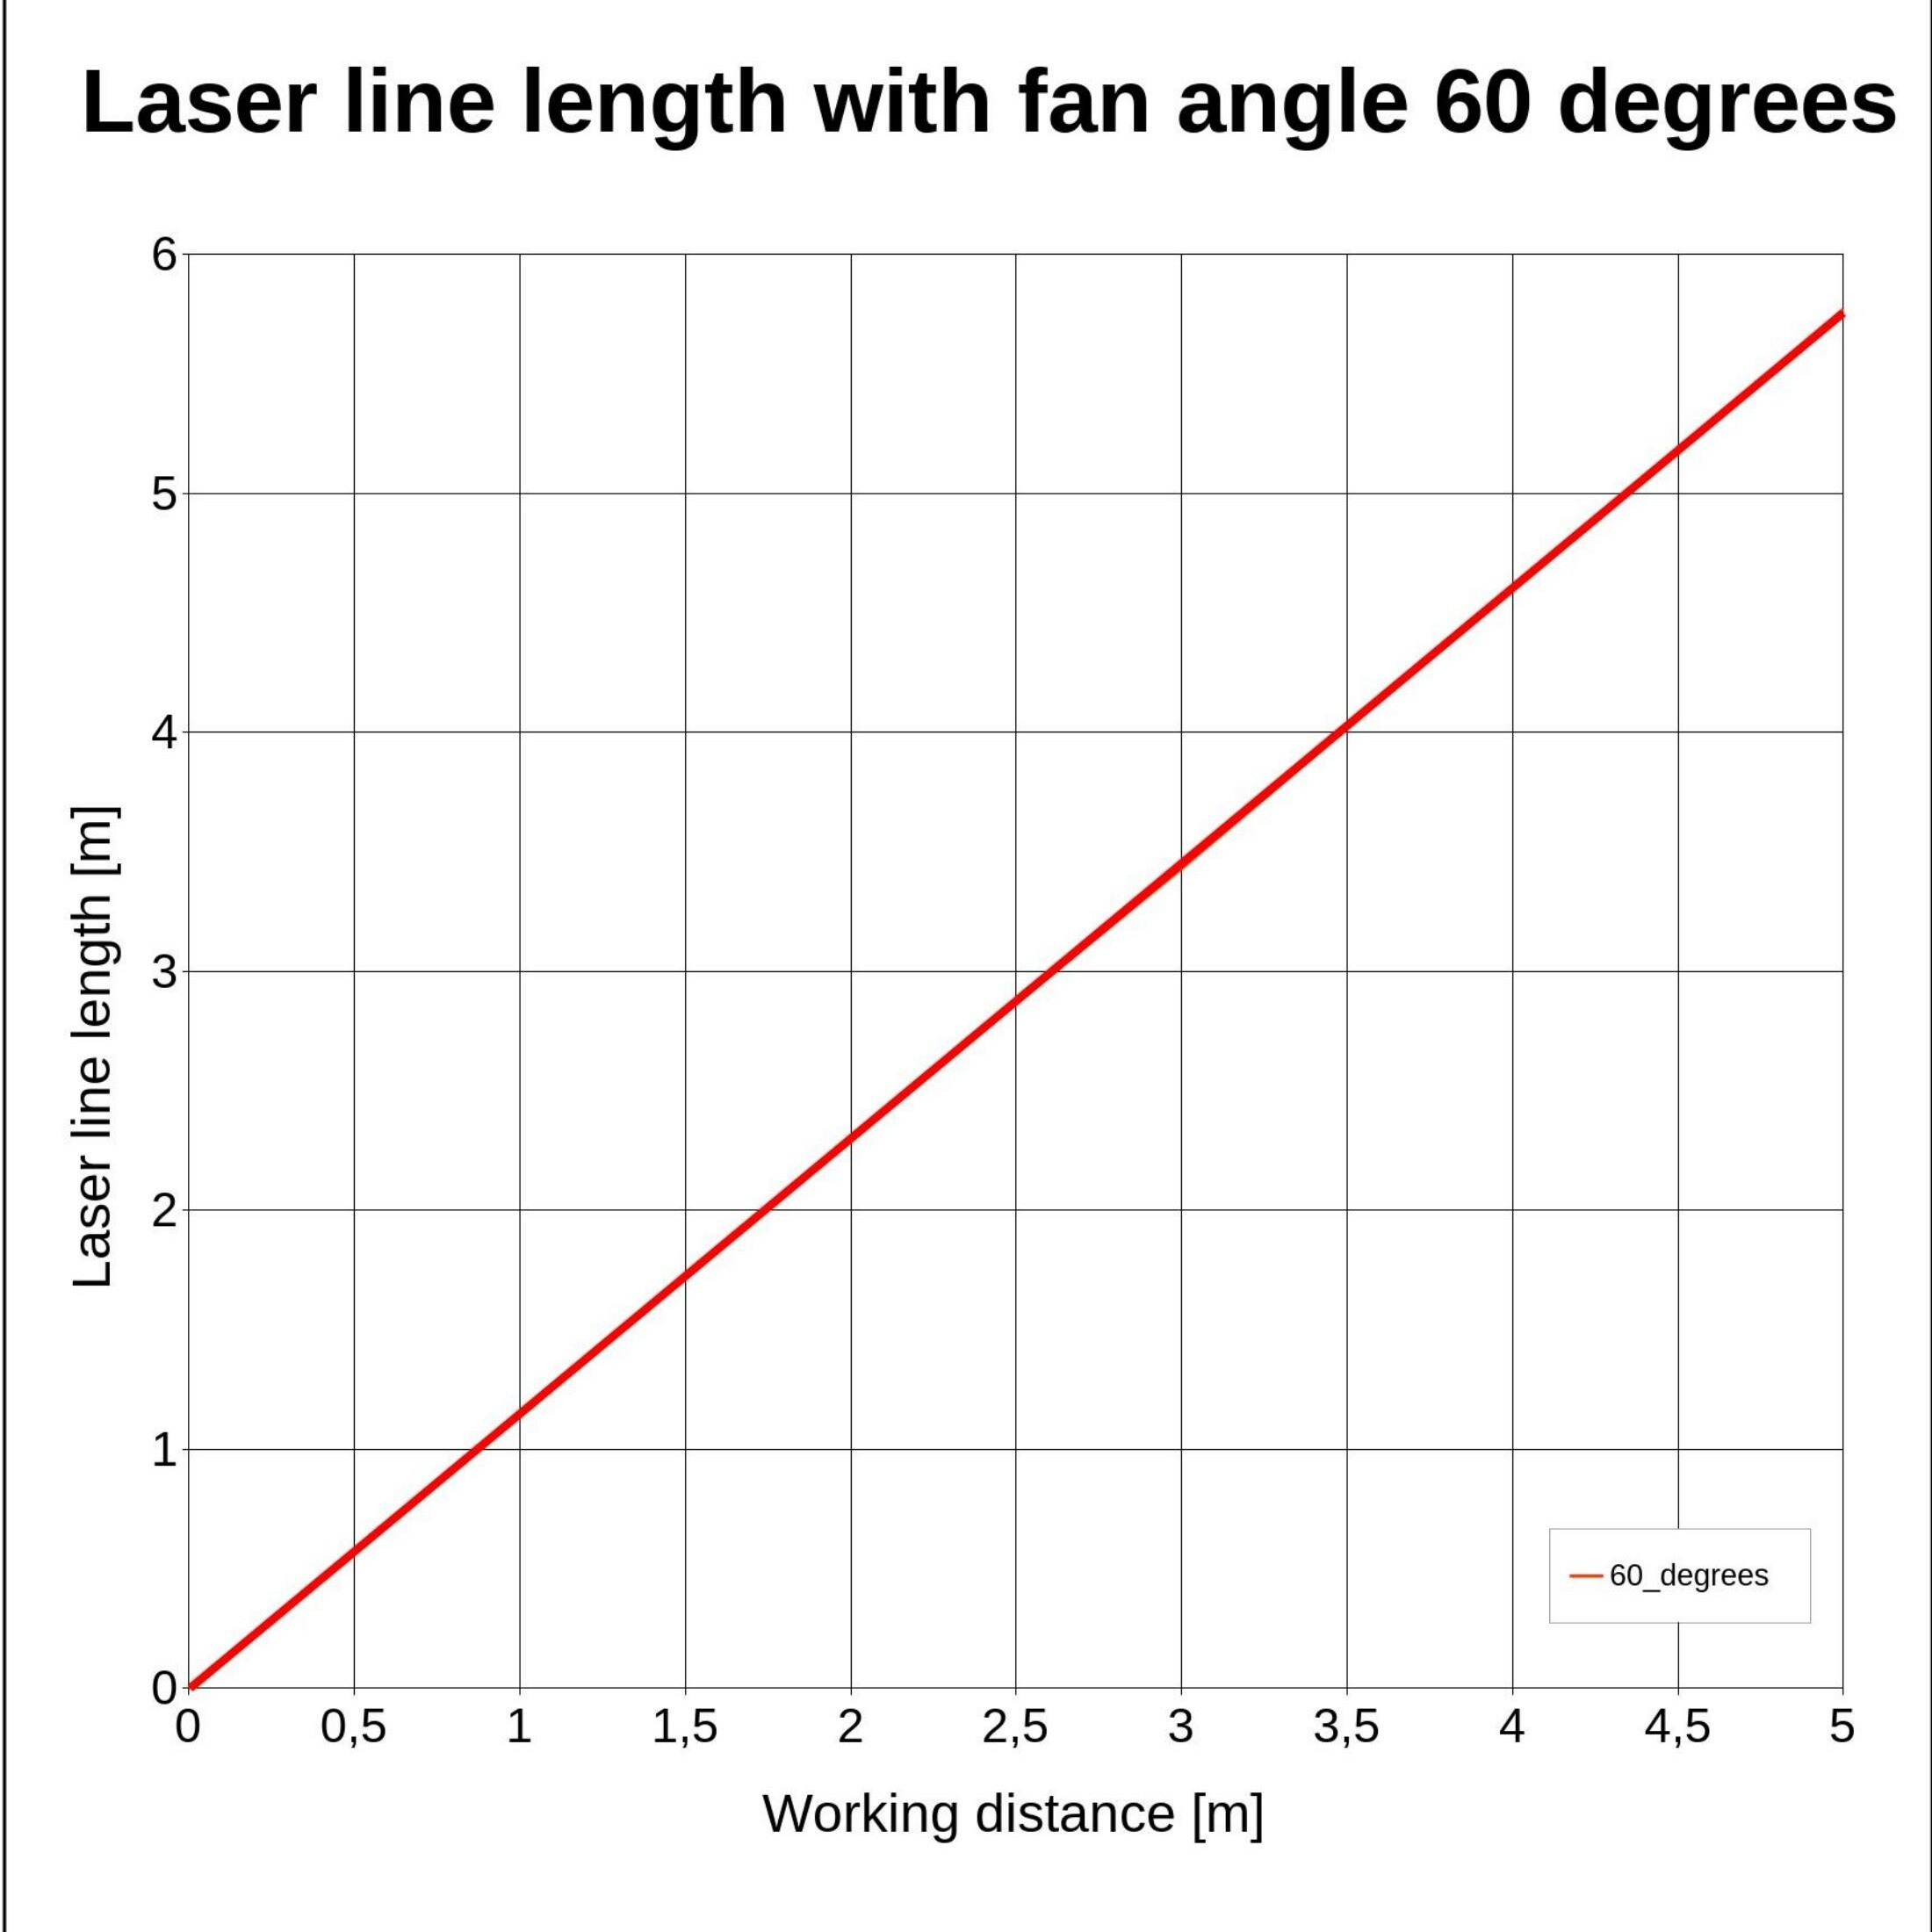 Laserfuchs Laser LFL635-5-6(9x20)60